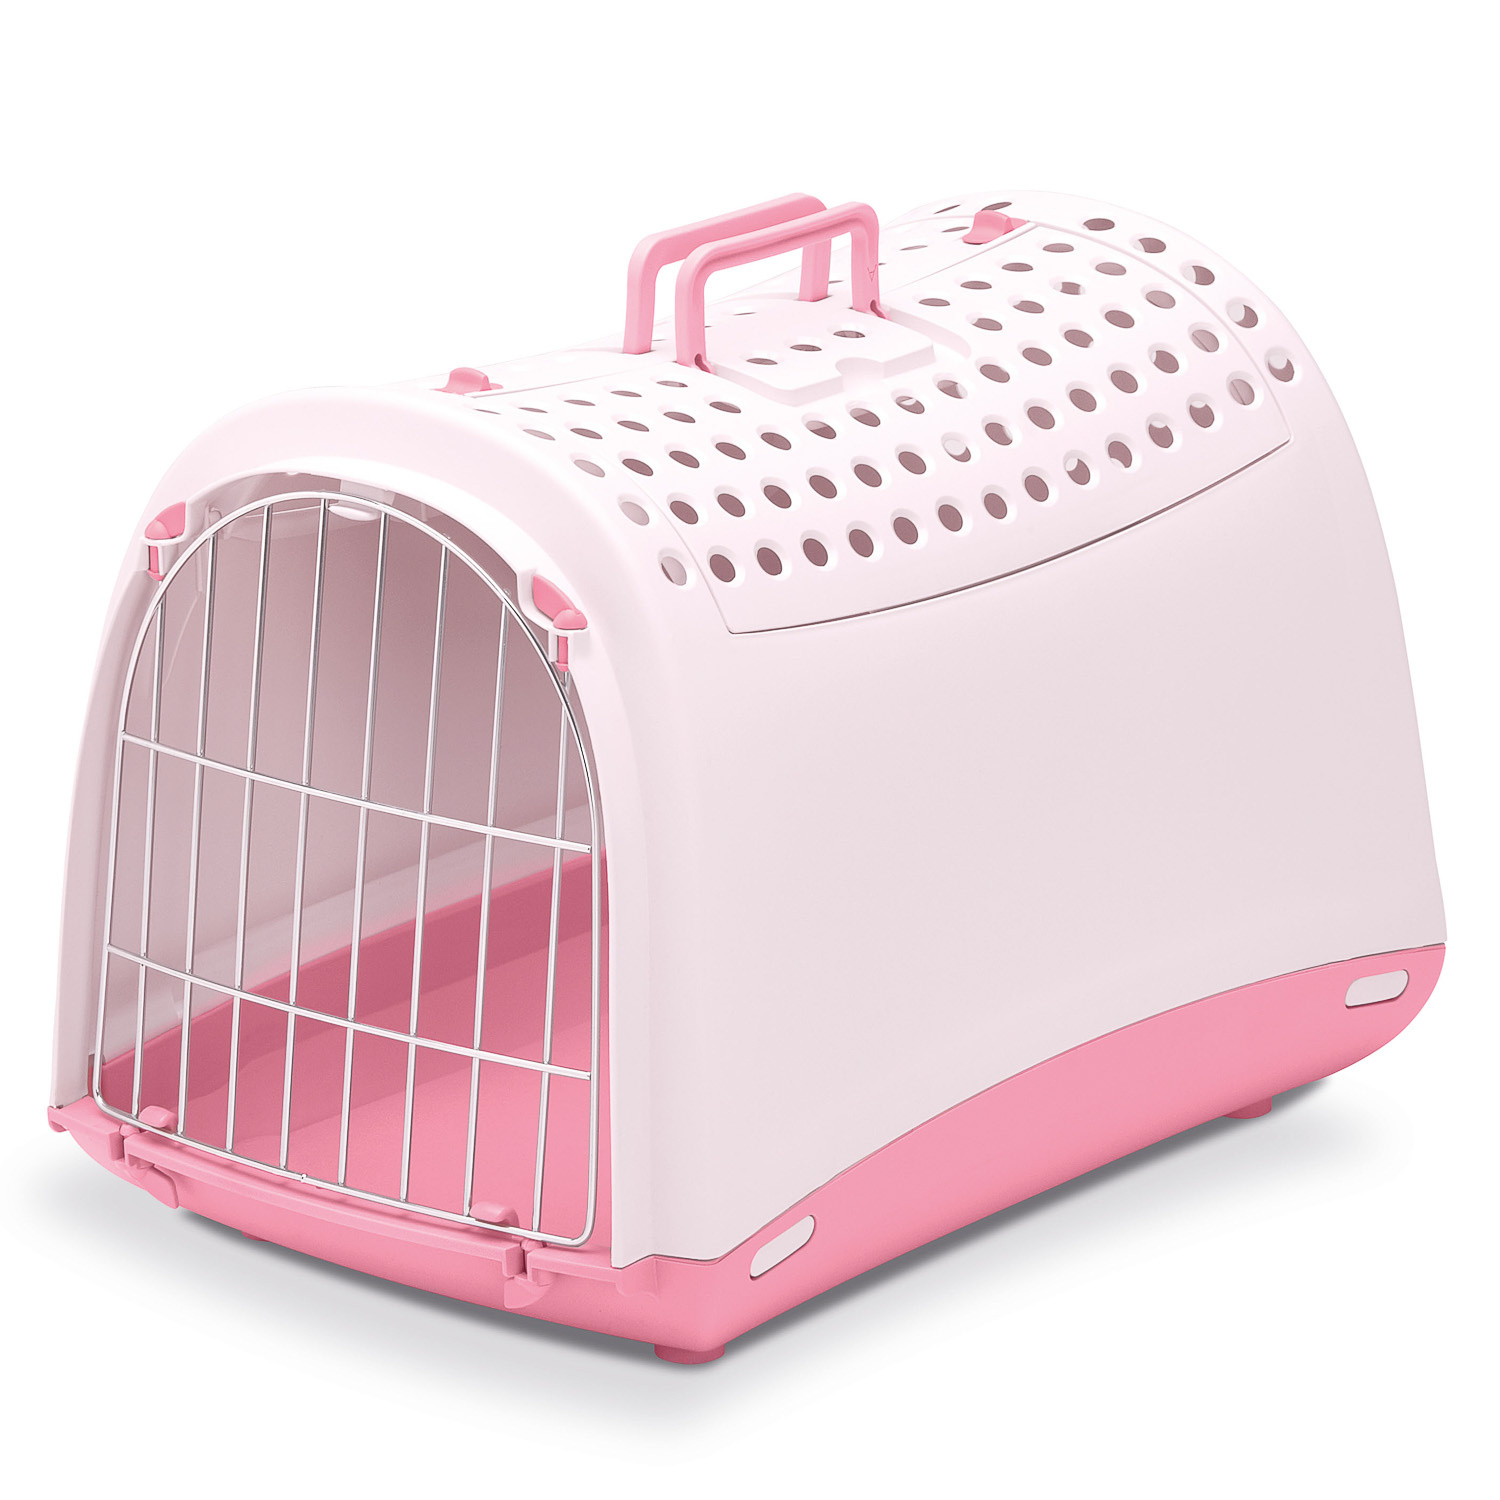 IMAC IMAC переноска для кошек и собак, нежно-розовый (1,37 кг)